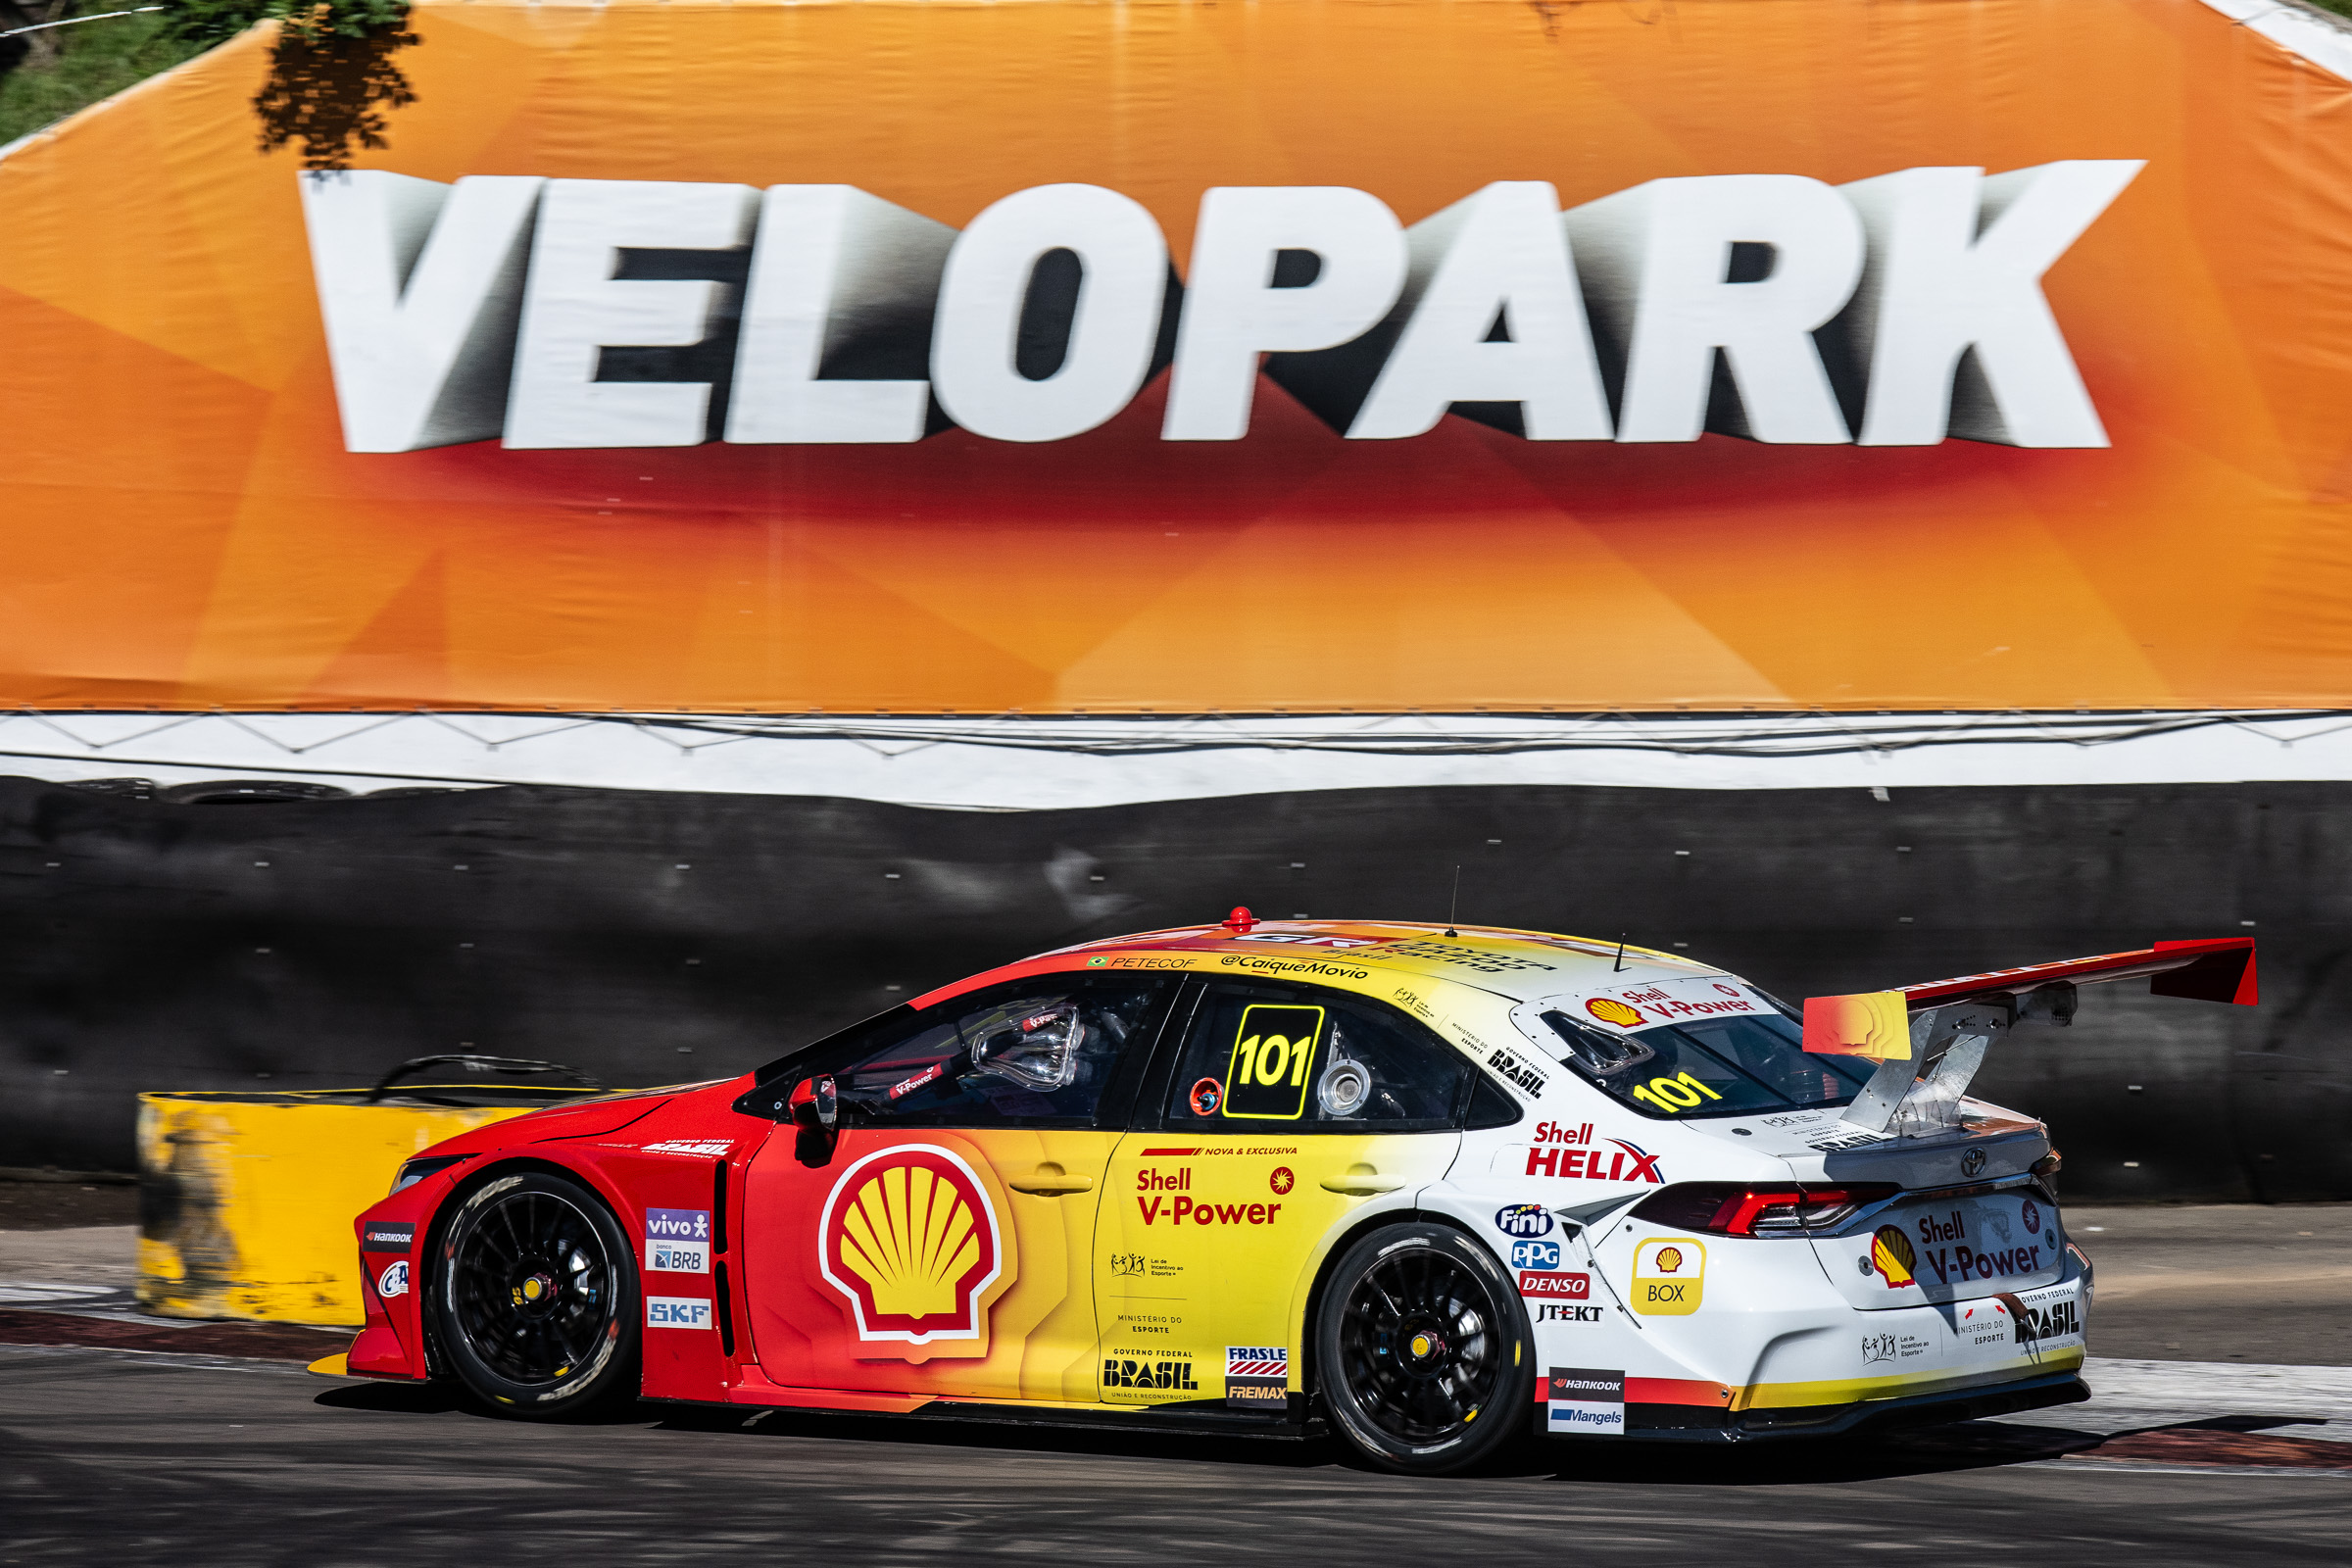 Gianluca Petecof coloca a Shell em sétimo lugar no grid em sua estreia no Velopark